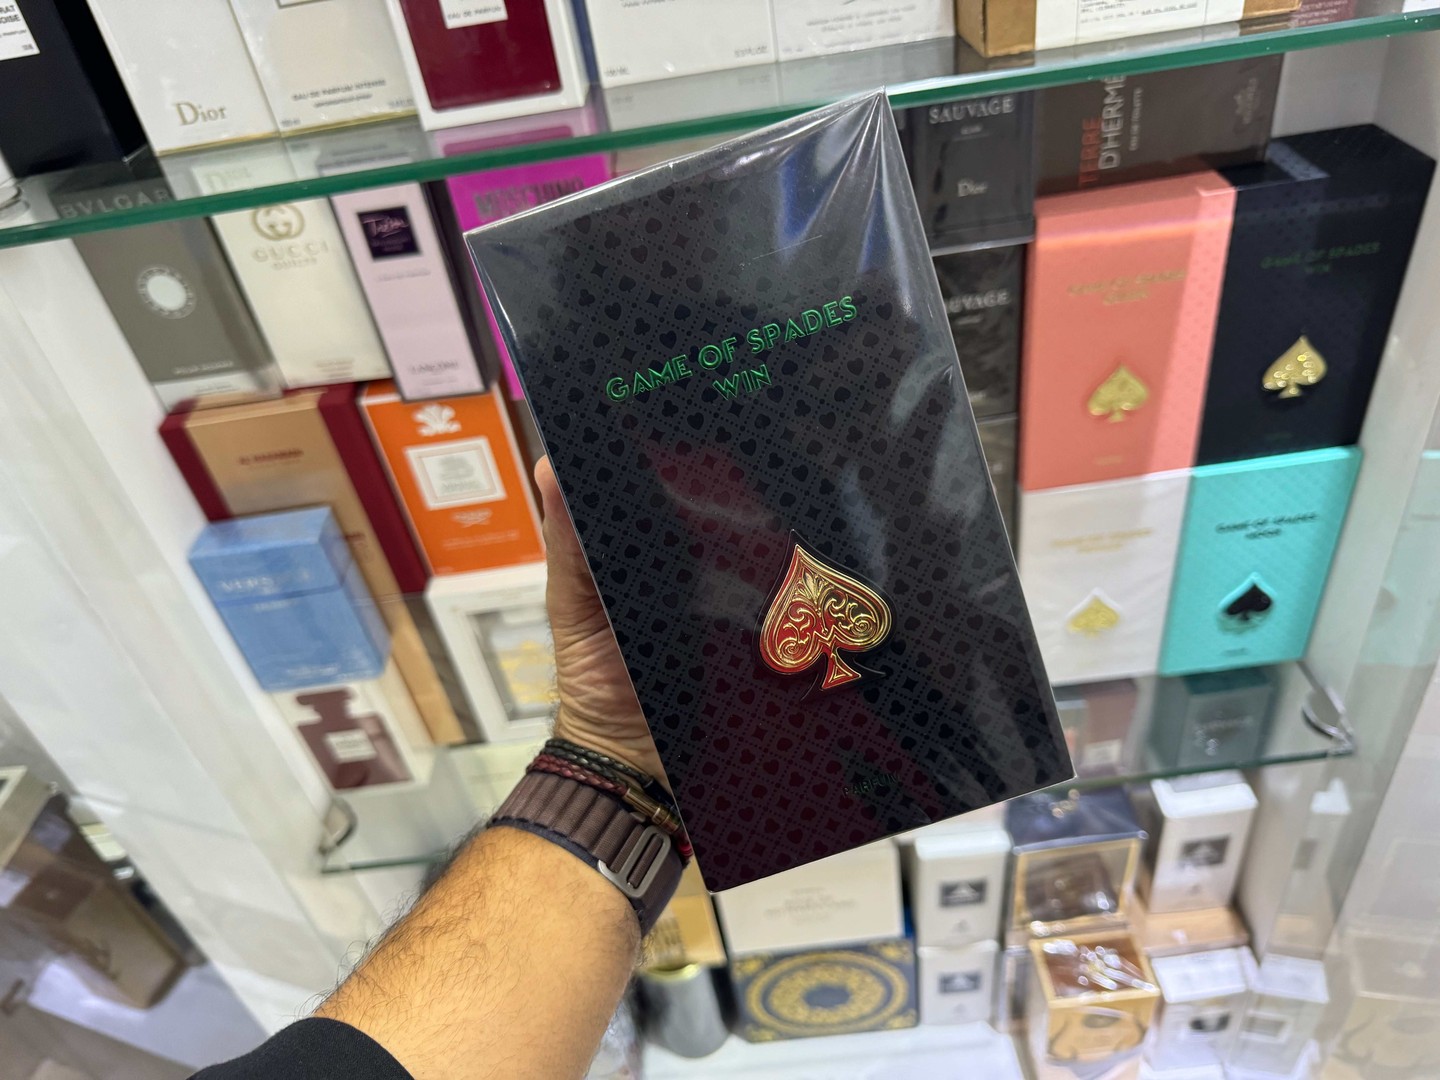 joyas, relojes y accesorios - Perfume Game of Spades Win Jo Milano Nuevo Sellado, RD$ 5,800 NEG